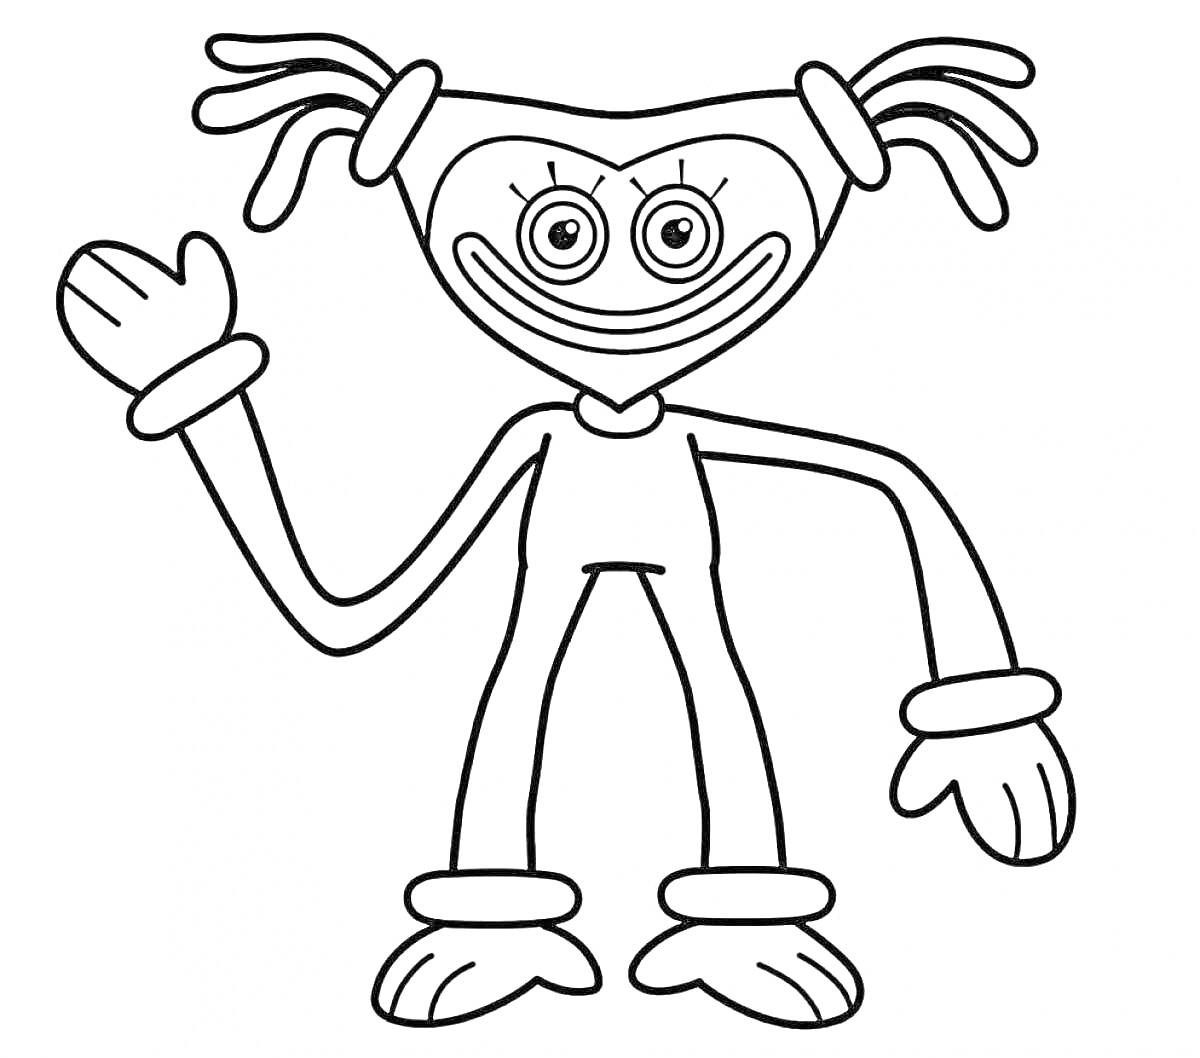 Раскраска Киси Миси с хвостиками, стоящая в полный рост и машущая рукой